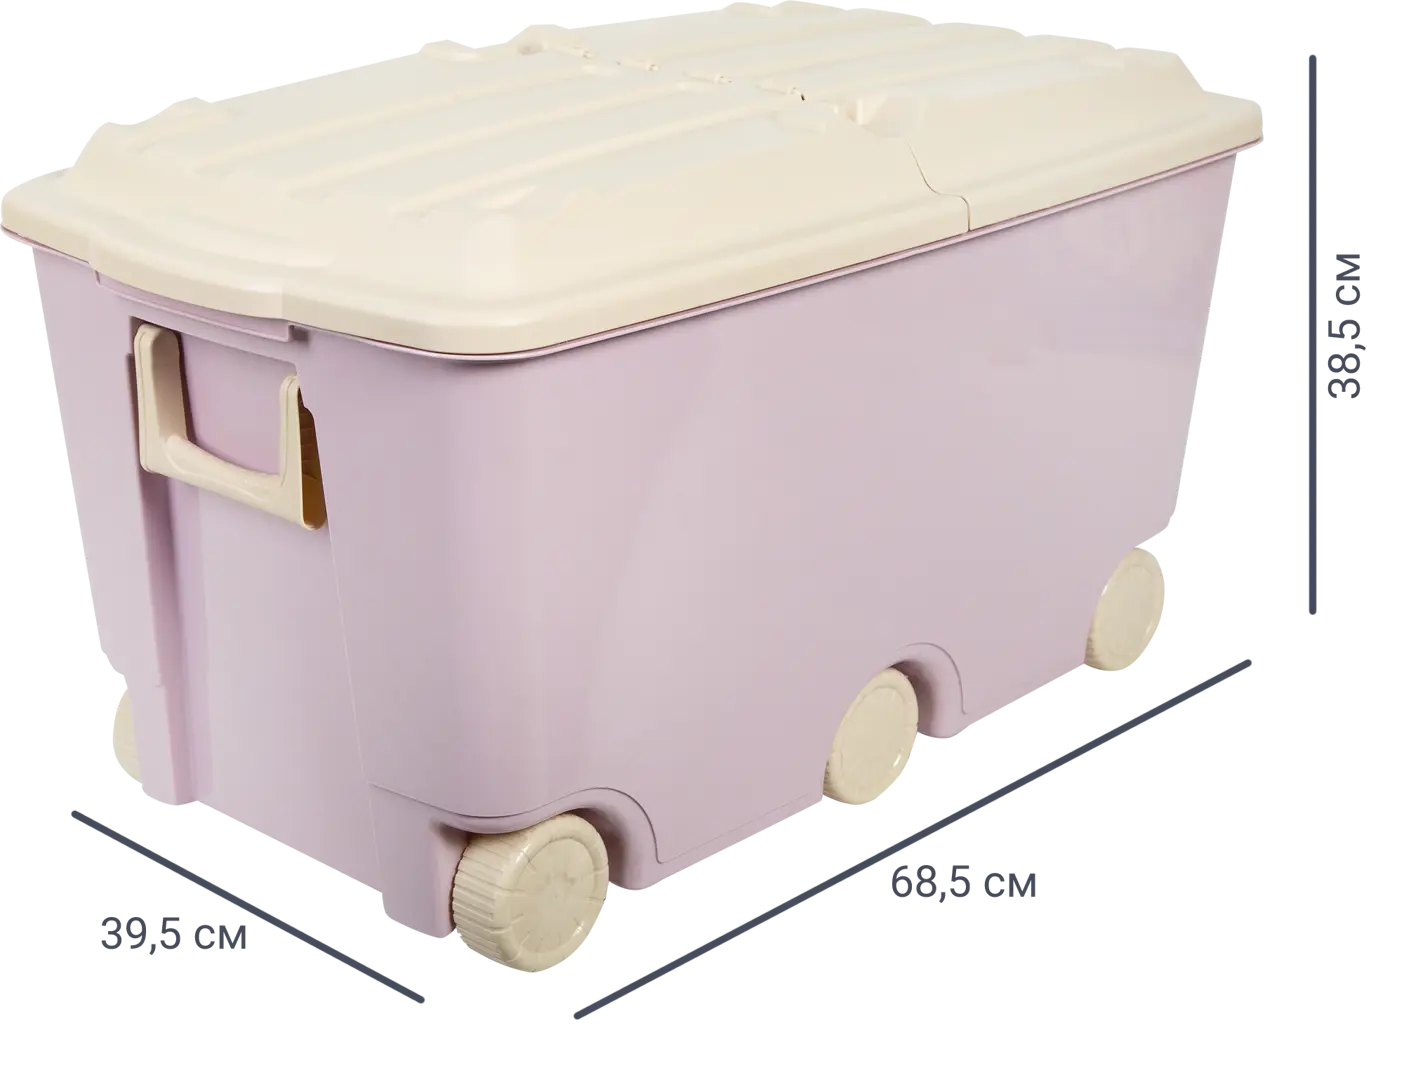 Ящик для игрушек 68.5x39.5x38.5 см 66.5 л пластик с крышкой цвет розовый комплект парта стул выдвижной ящик подставка anatomica amata белый розовый